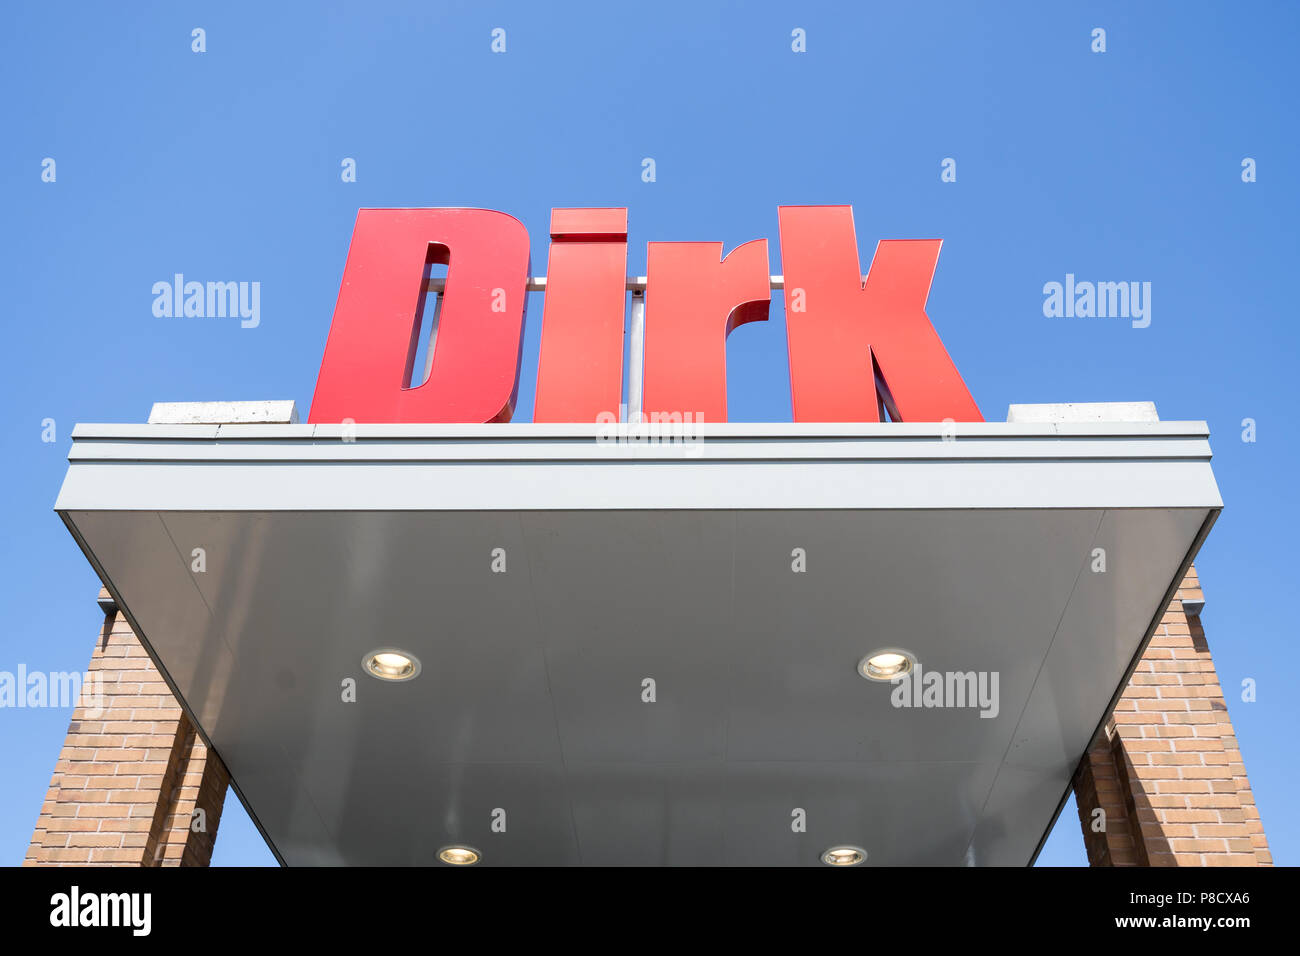 Dirk segno alla filiale. Dirk van den Broek è un olandese società di vendita al dettaglio e un membro di Superunie, un olandese organizzazione di acquisto per i supermercati. Foto Stock